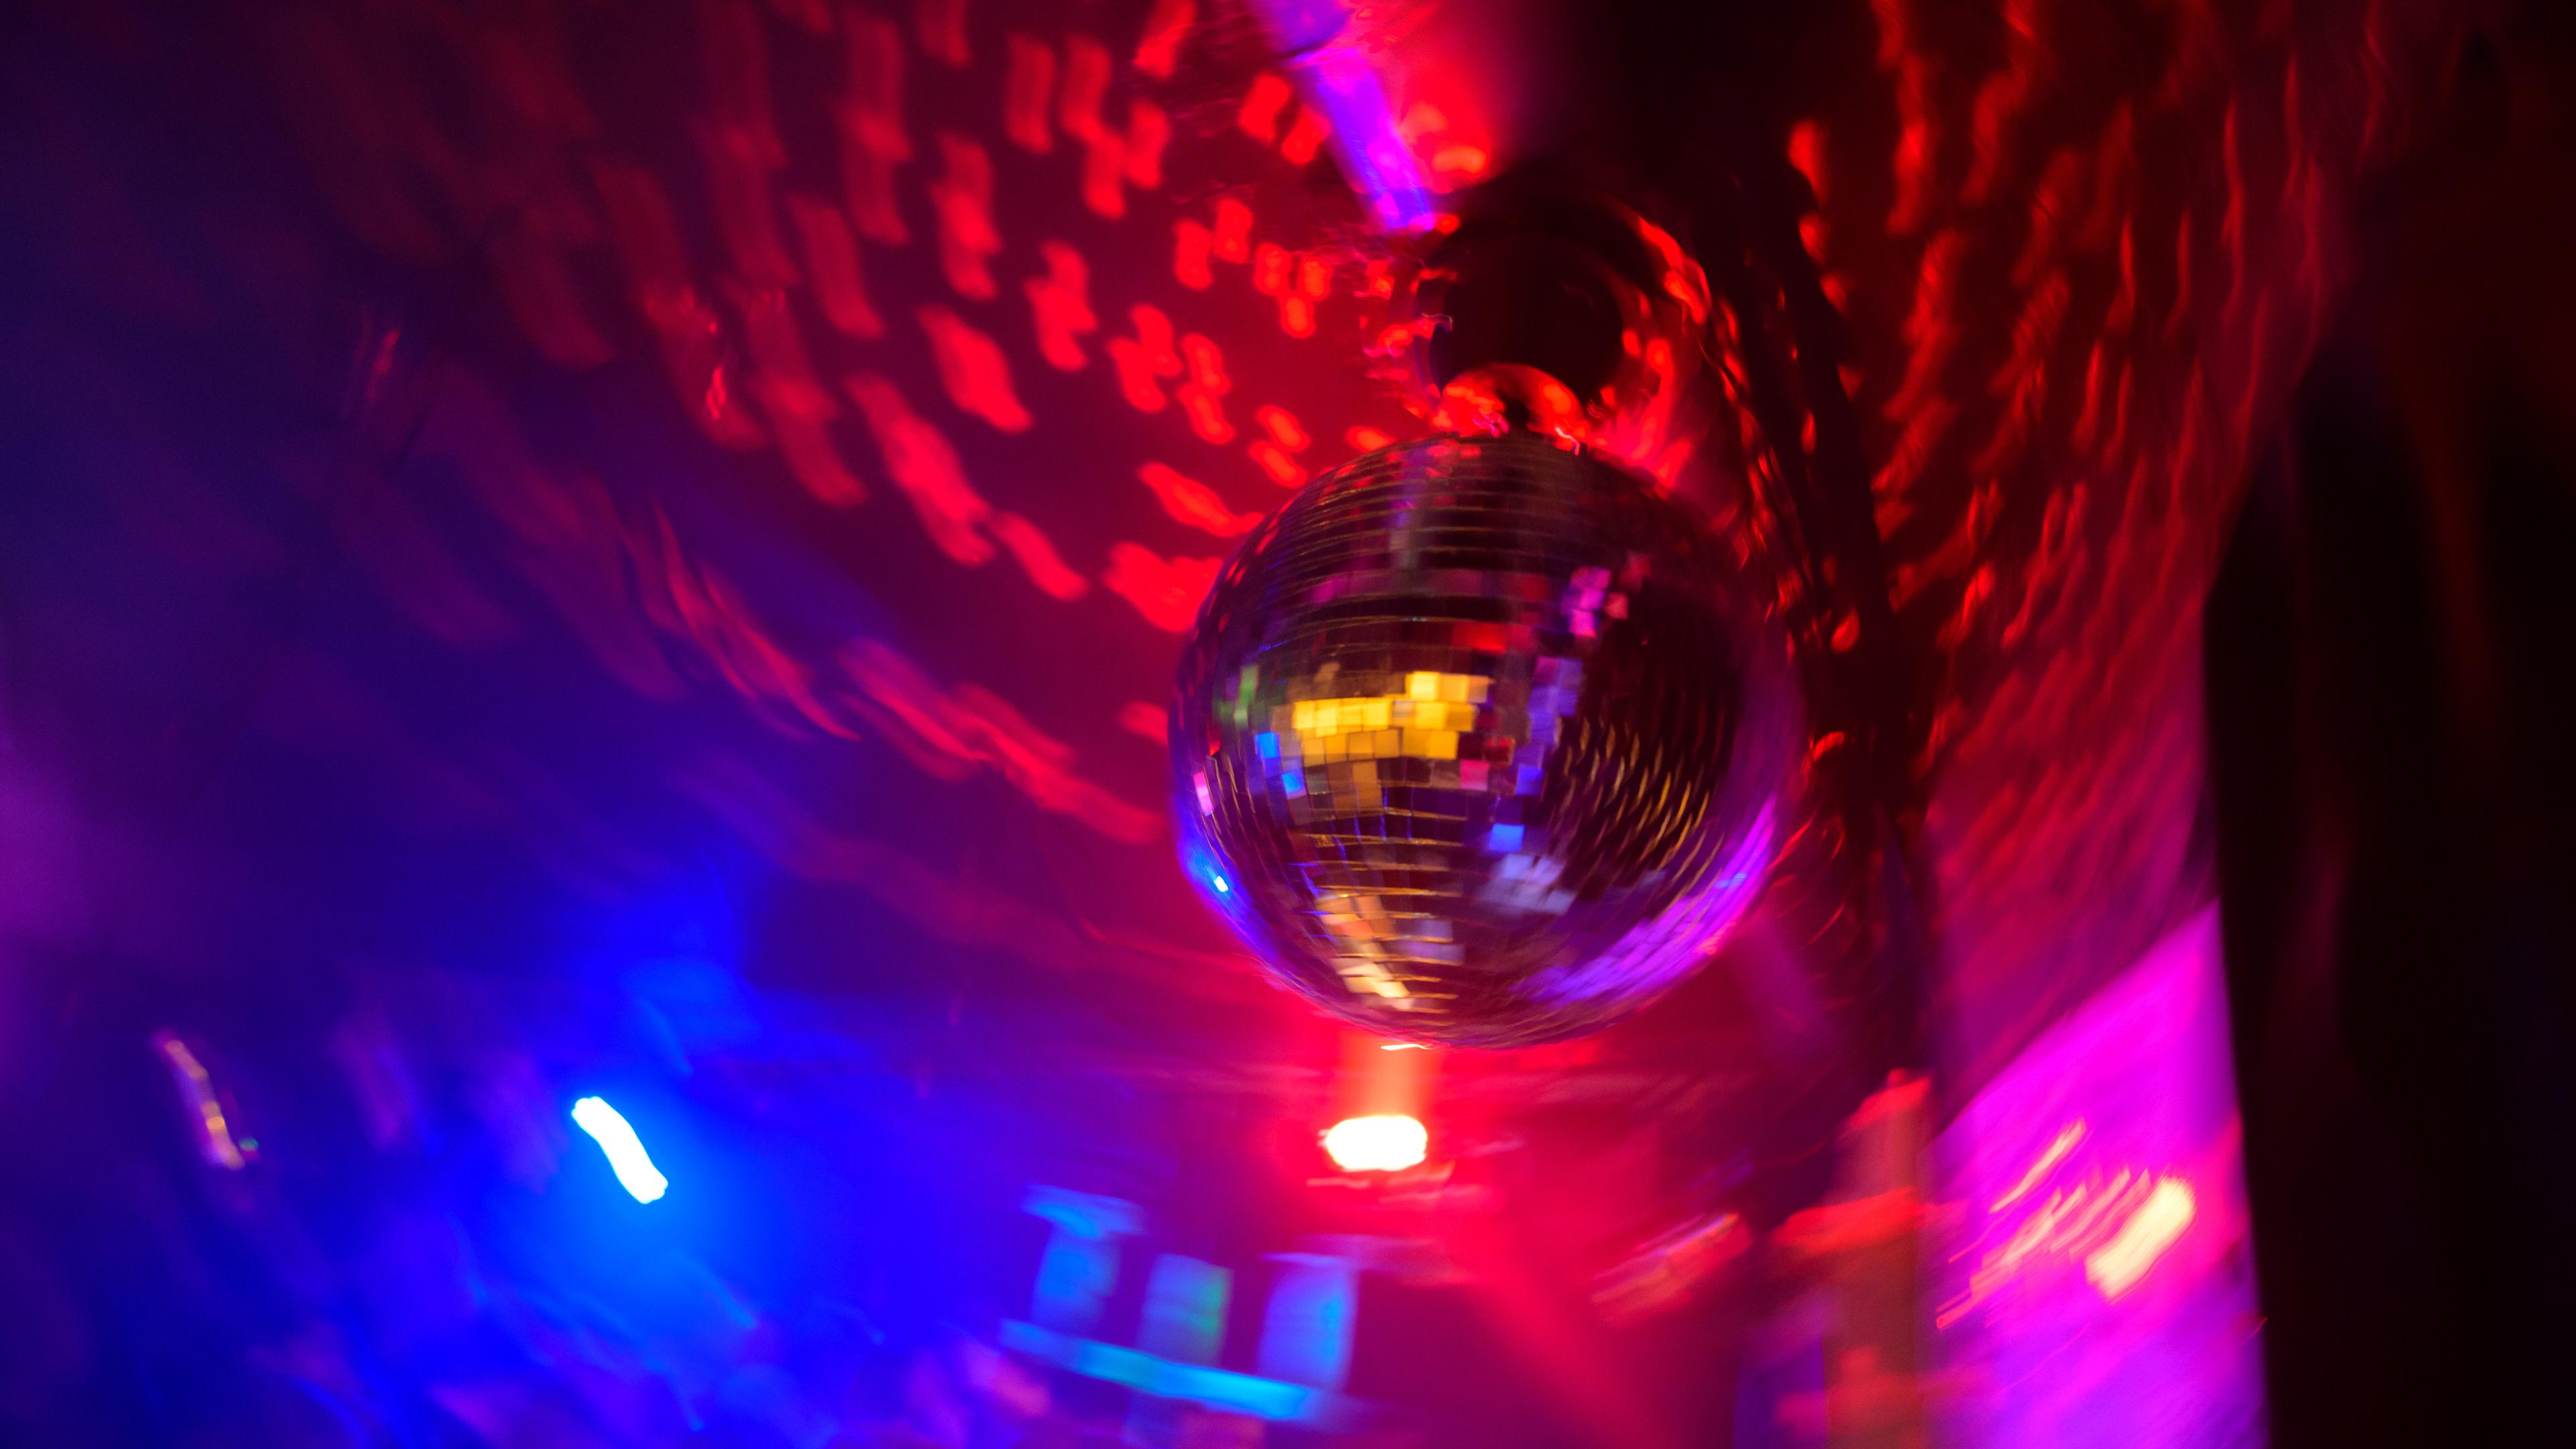 Eine Disco-Kugel dreht sich in einem Club im Hamburger Schanzenviertel.